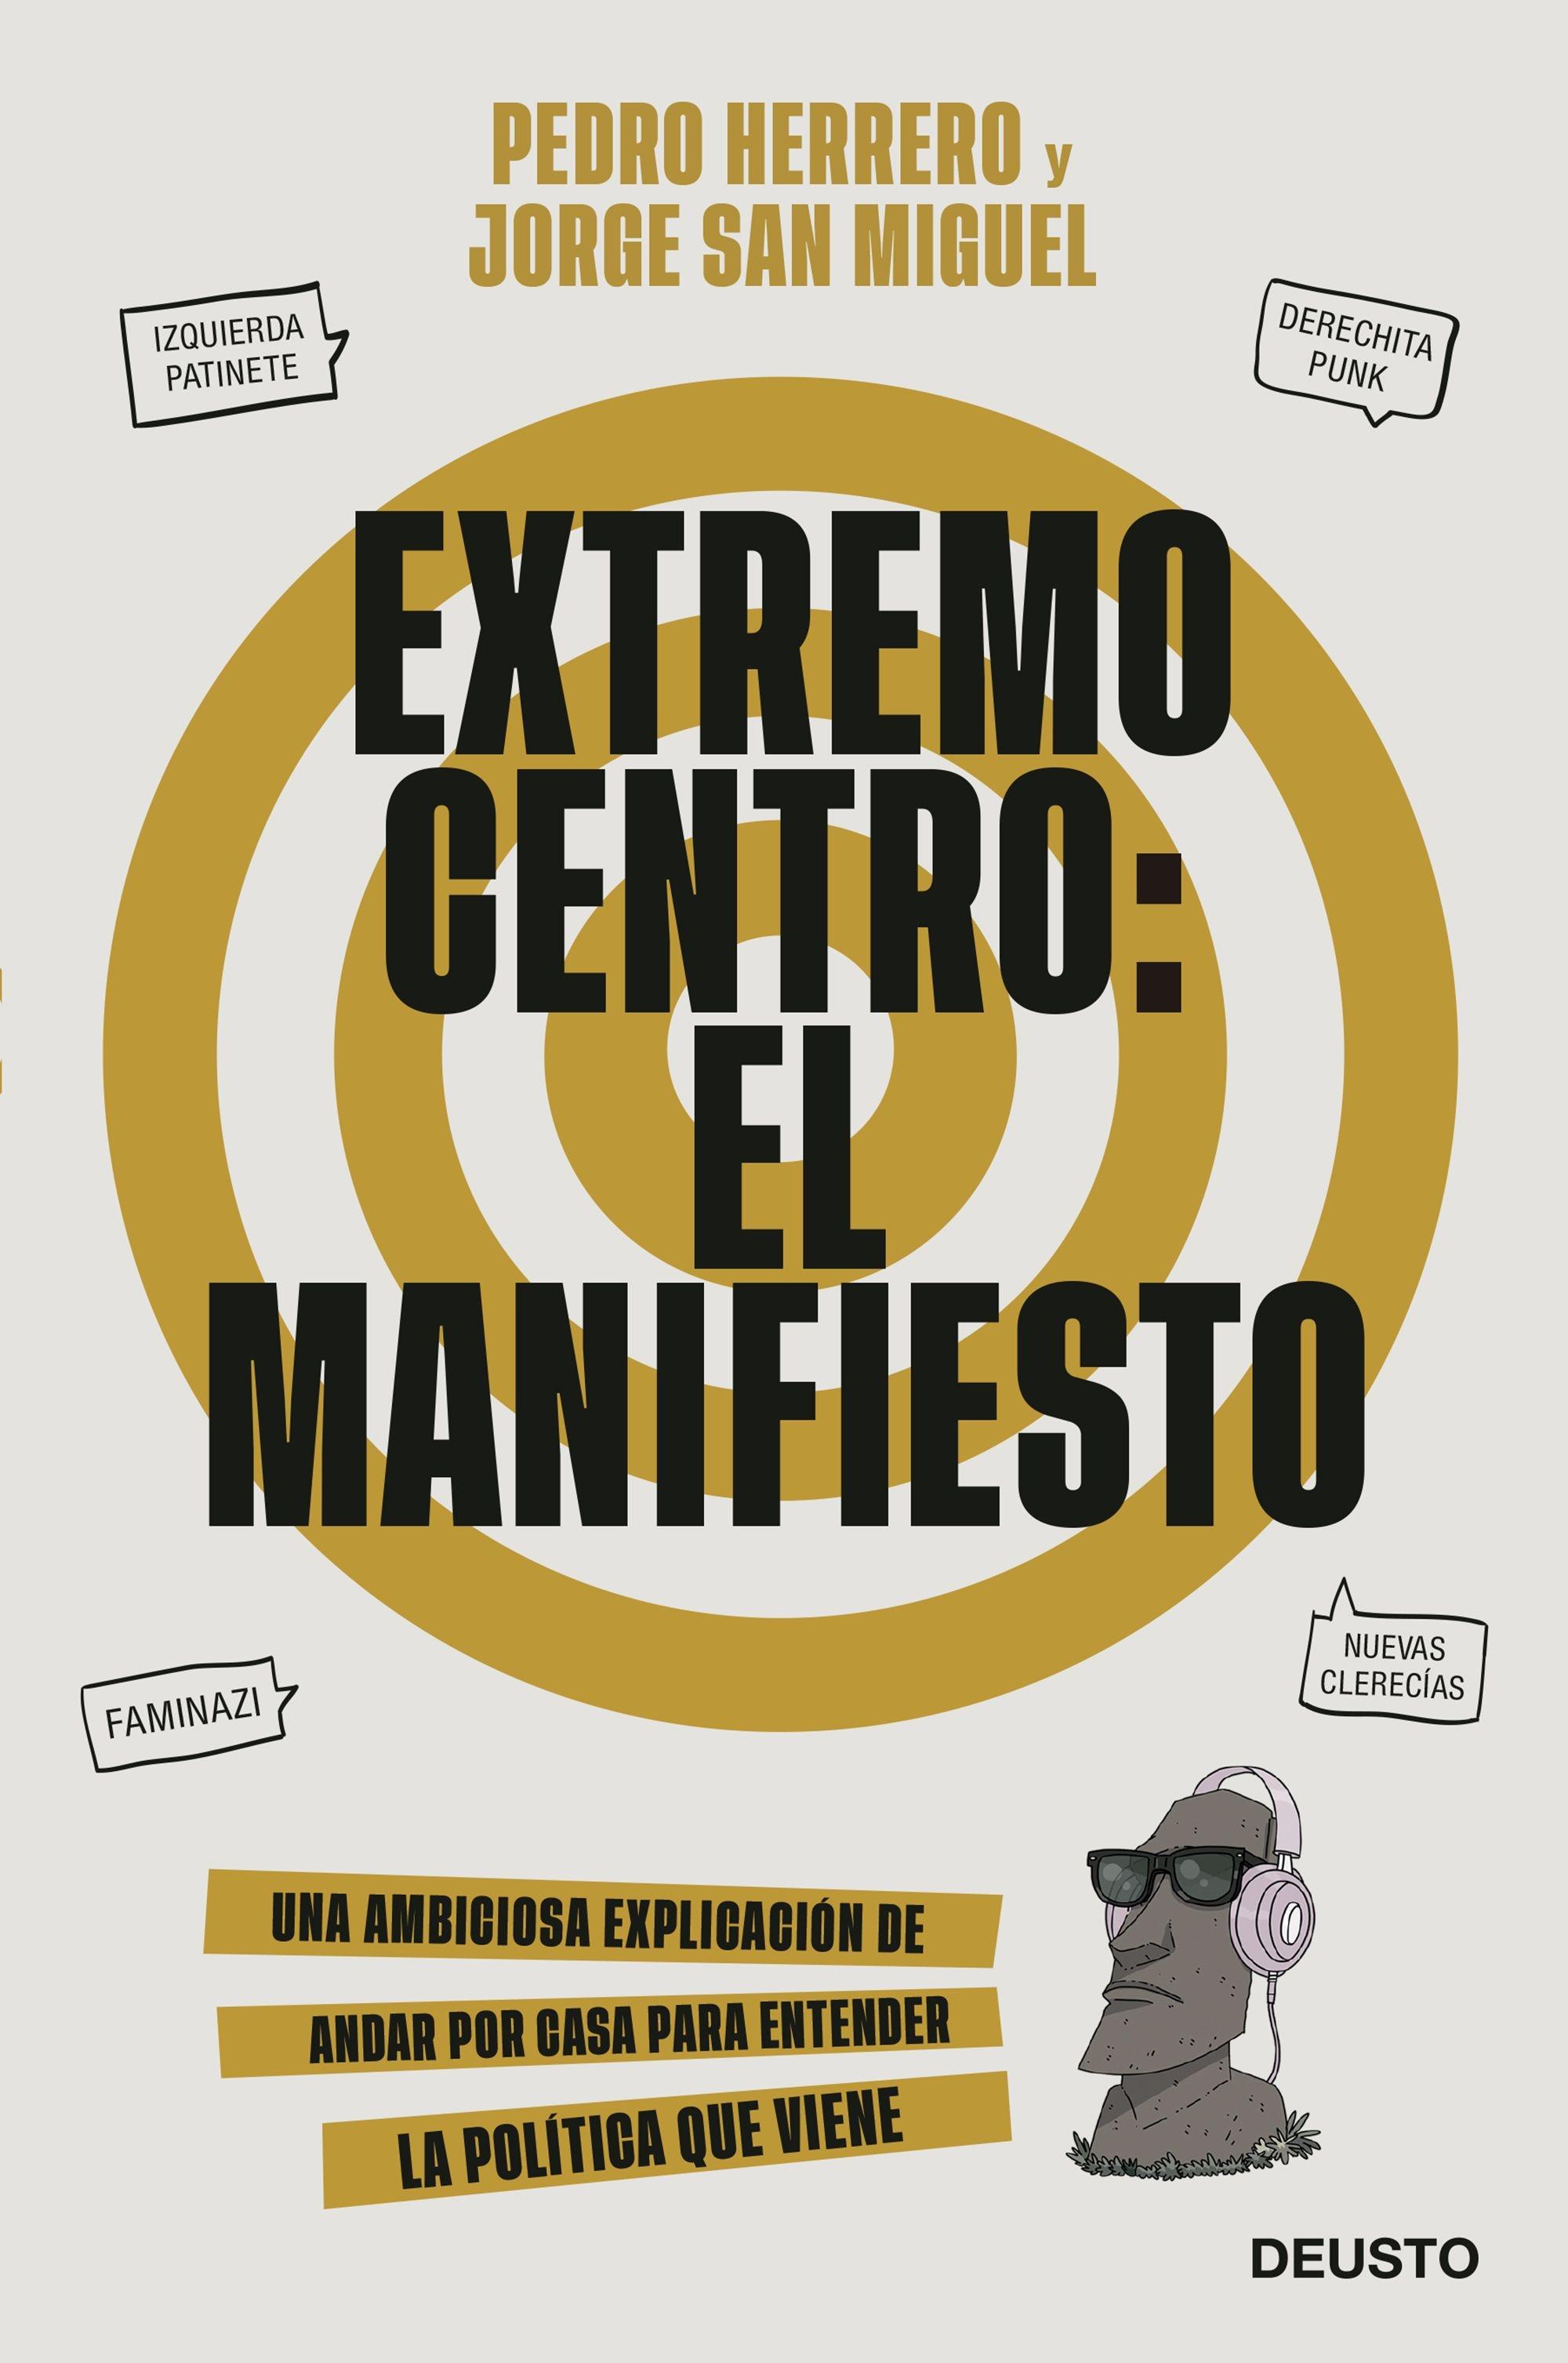 Extremo Centro: el Manifiesto "Una Ambiciosa Explicación de Andar por Casa para Entender la Política Qu". 